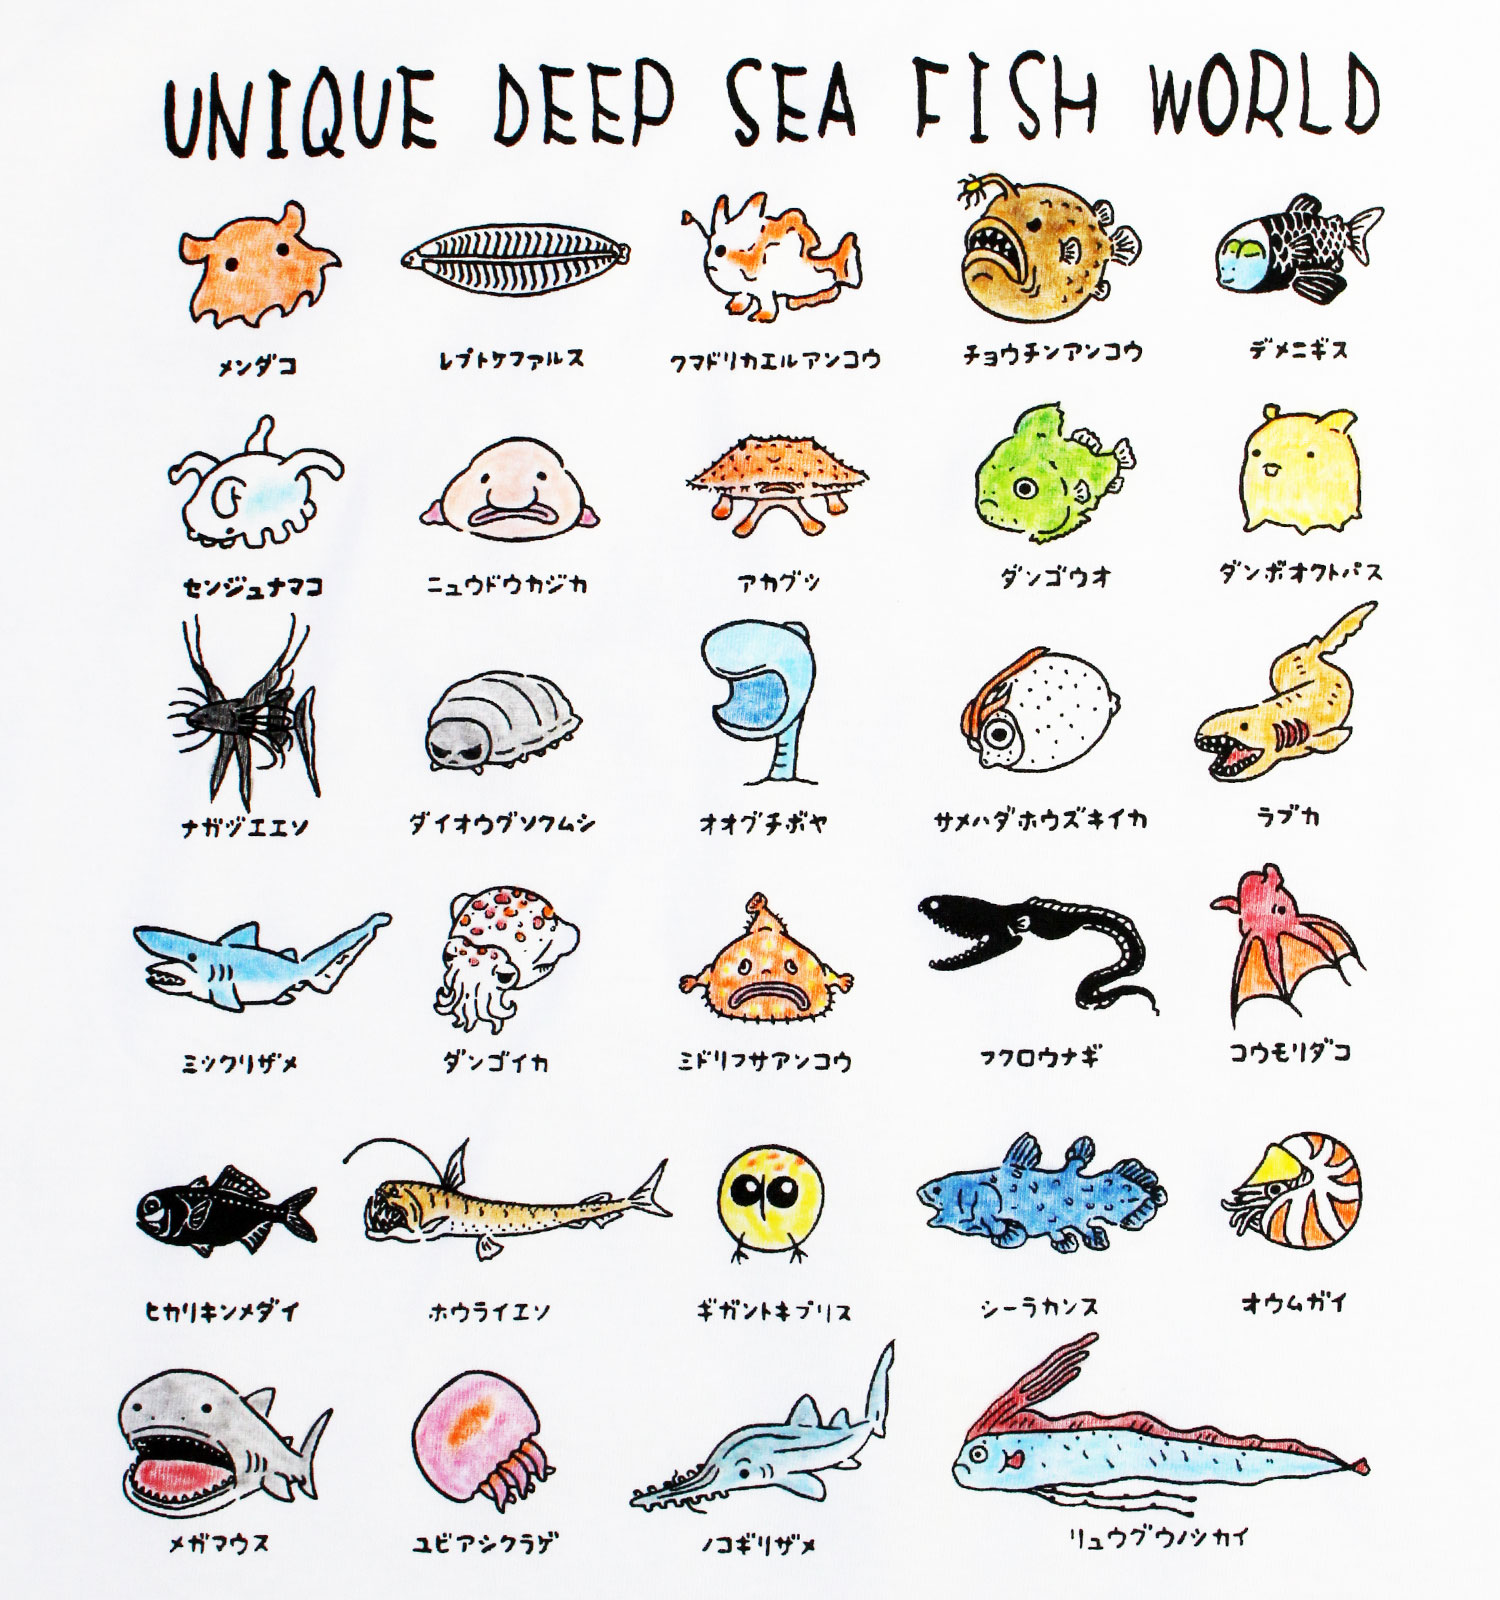 ユニークな深海魚の世界 レディースタイプ Iichi ハンドメイド クラフト作品 手仕事品の通販